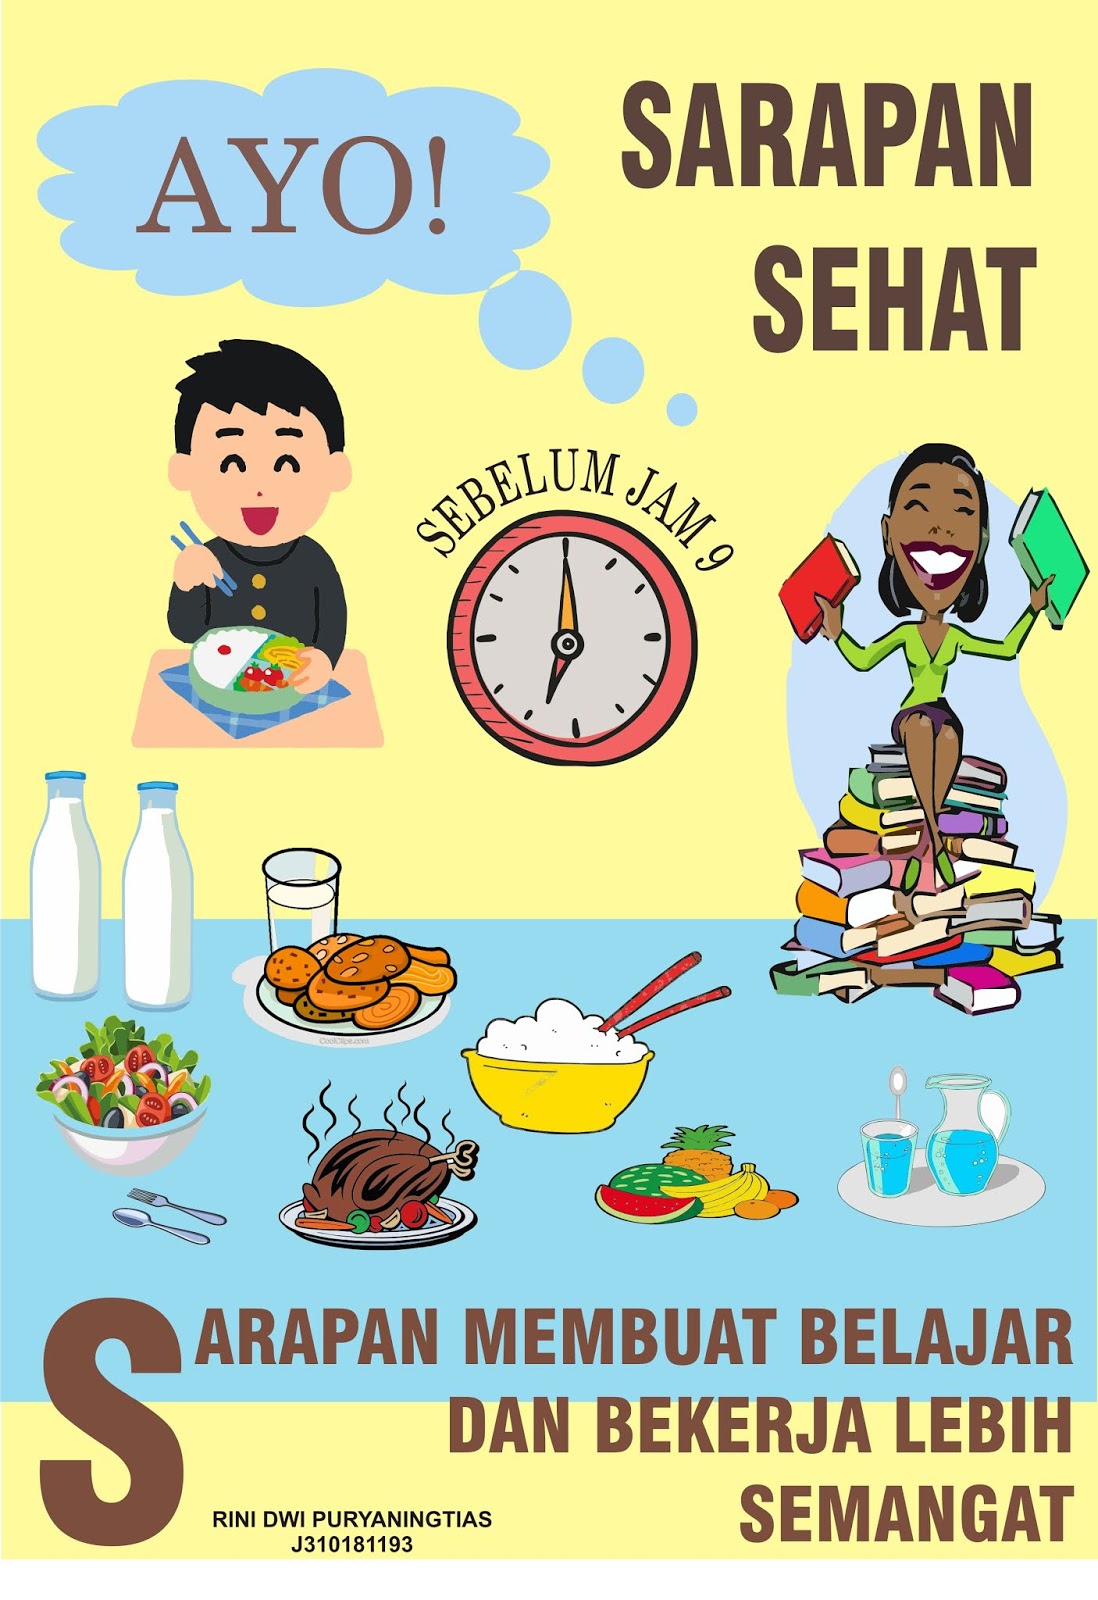 Download Gambar Menu Makanan Bergizi Seimbang PNG - Harga Menu Delivery